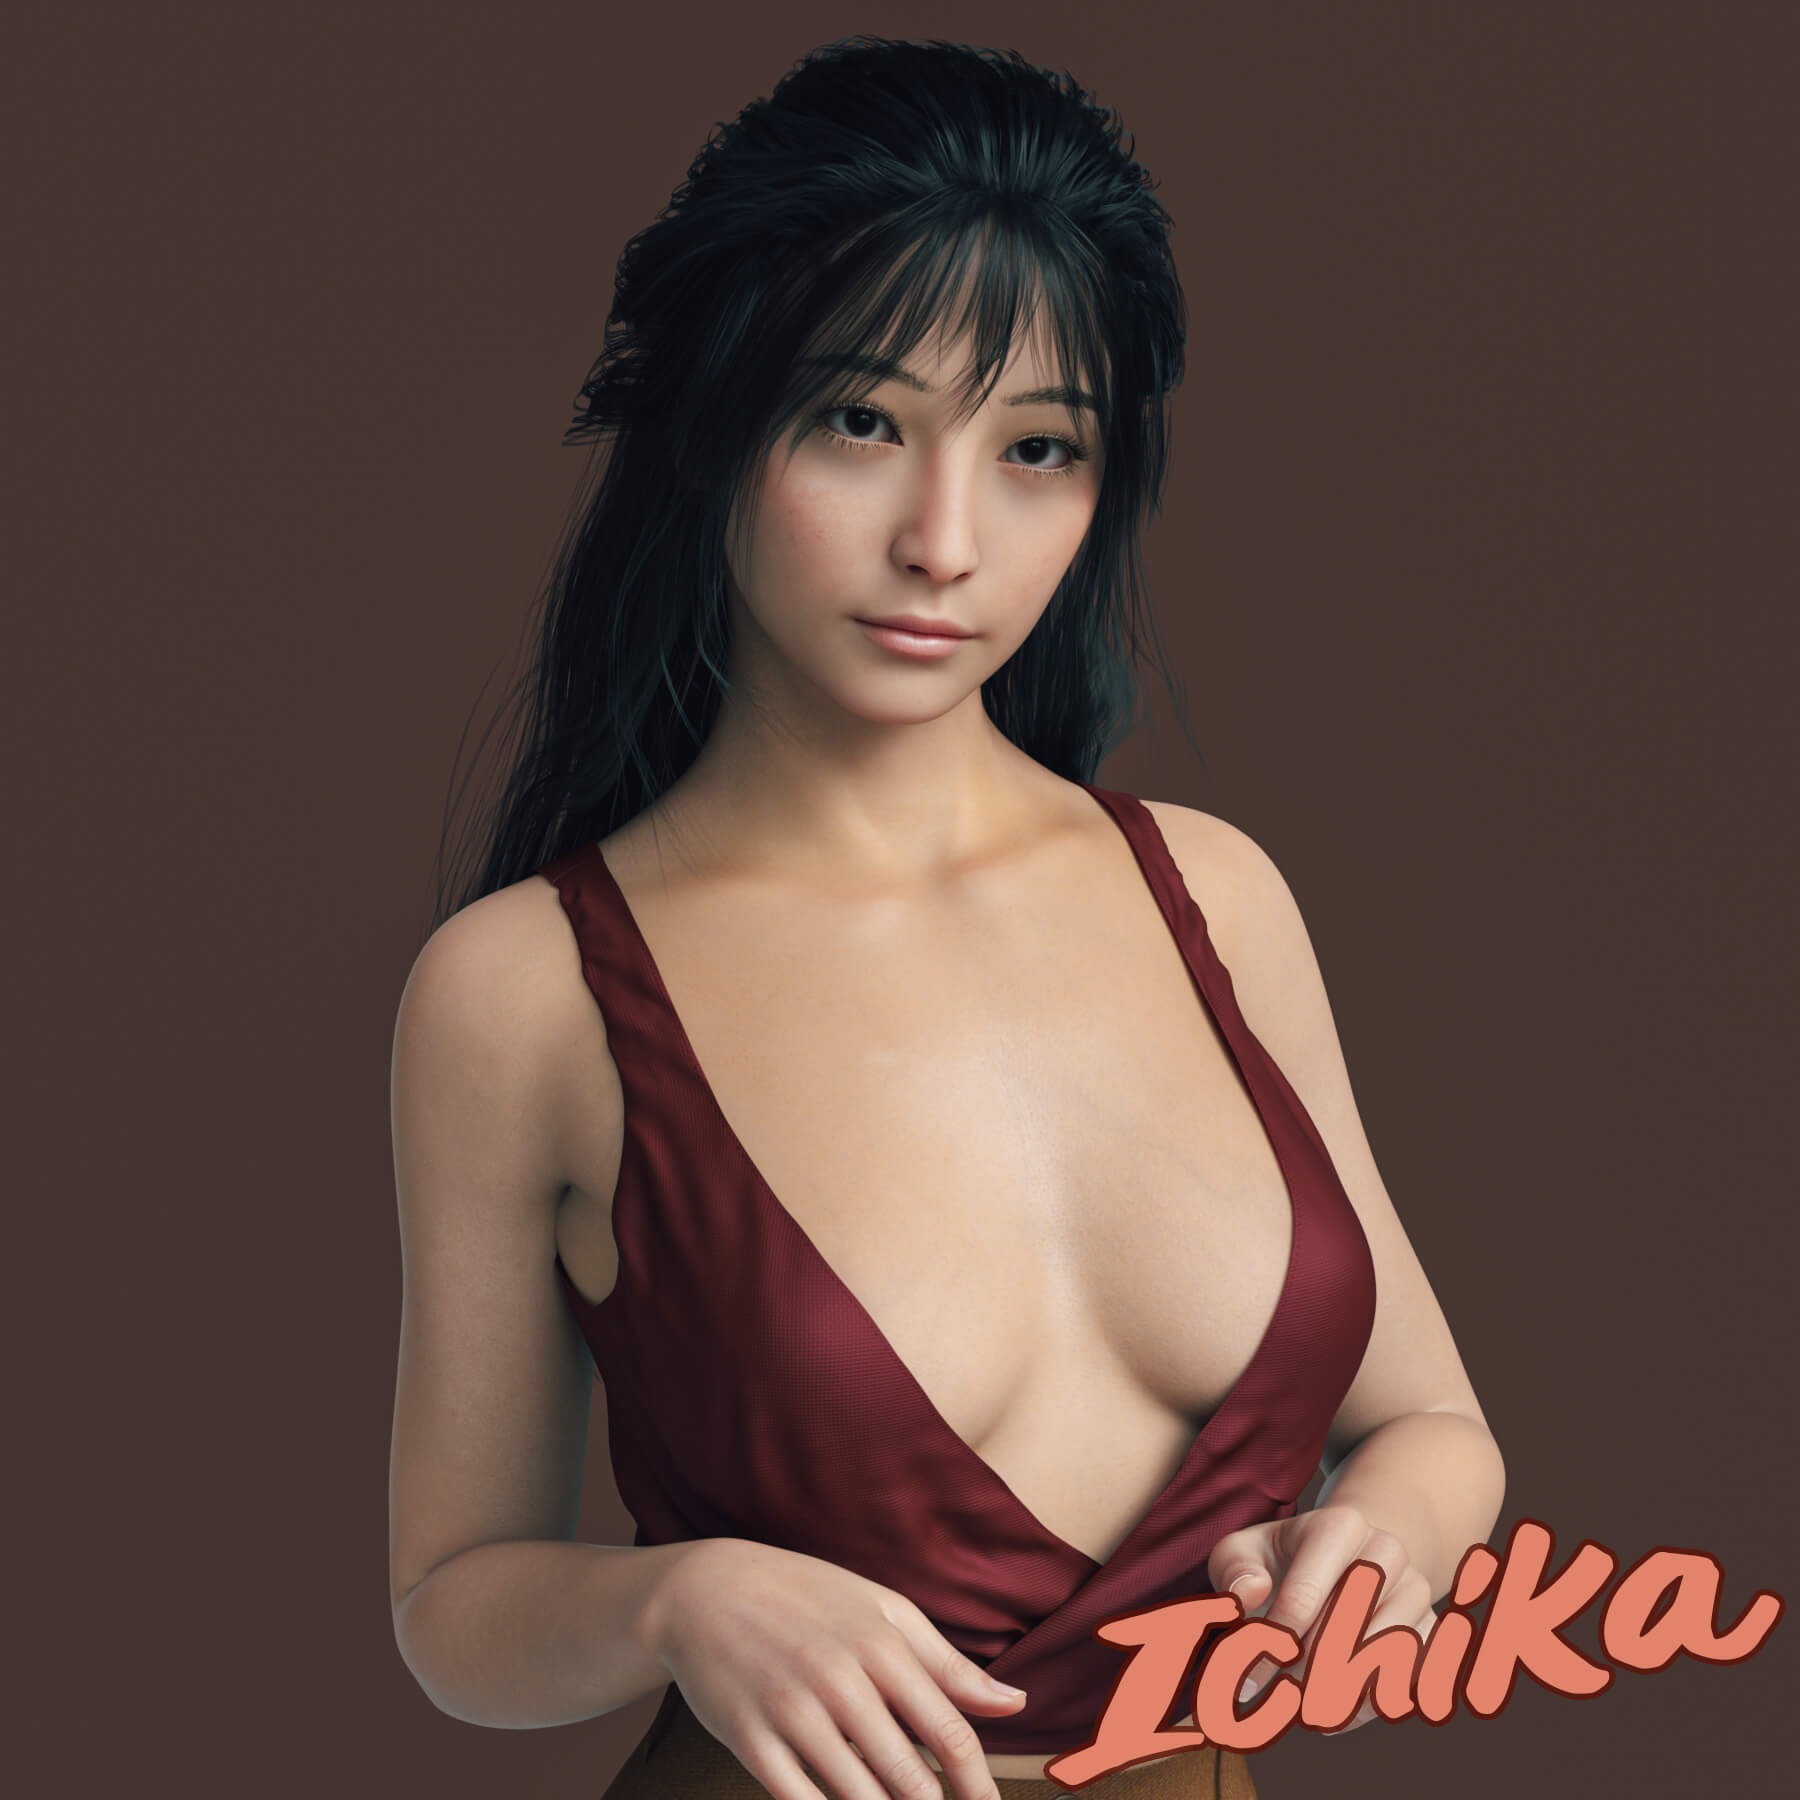 ichika character morph for genesis 8 female 01 1713609140